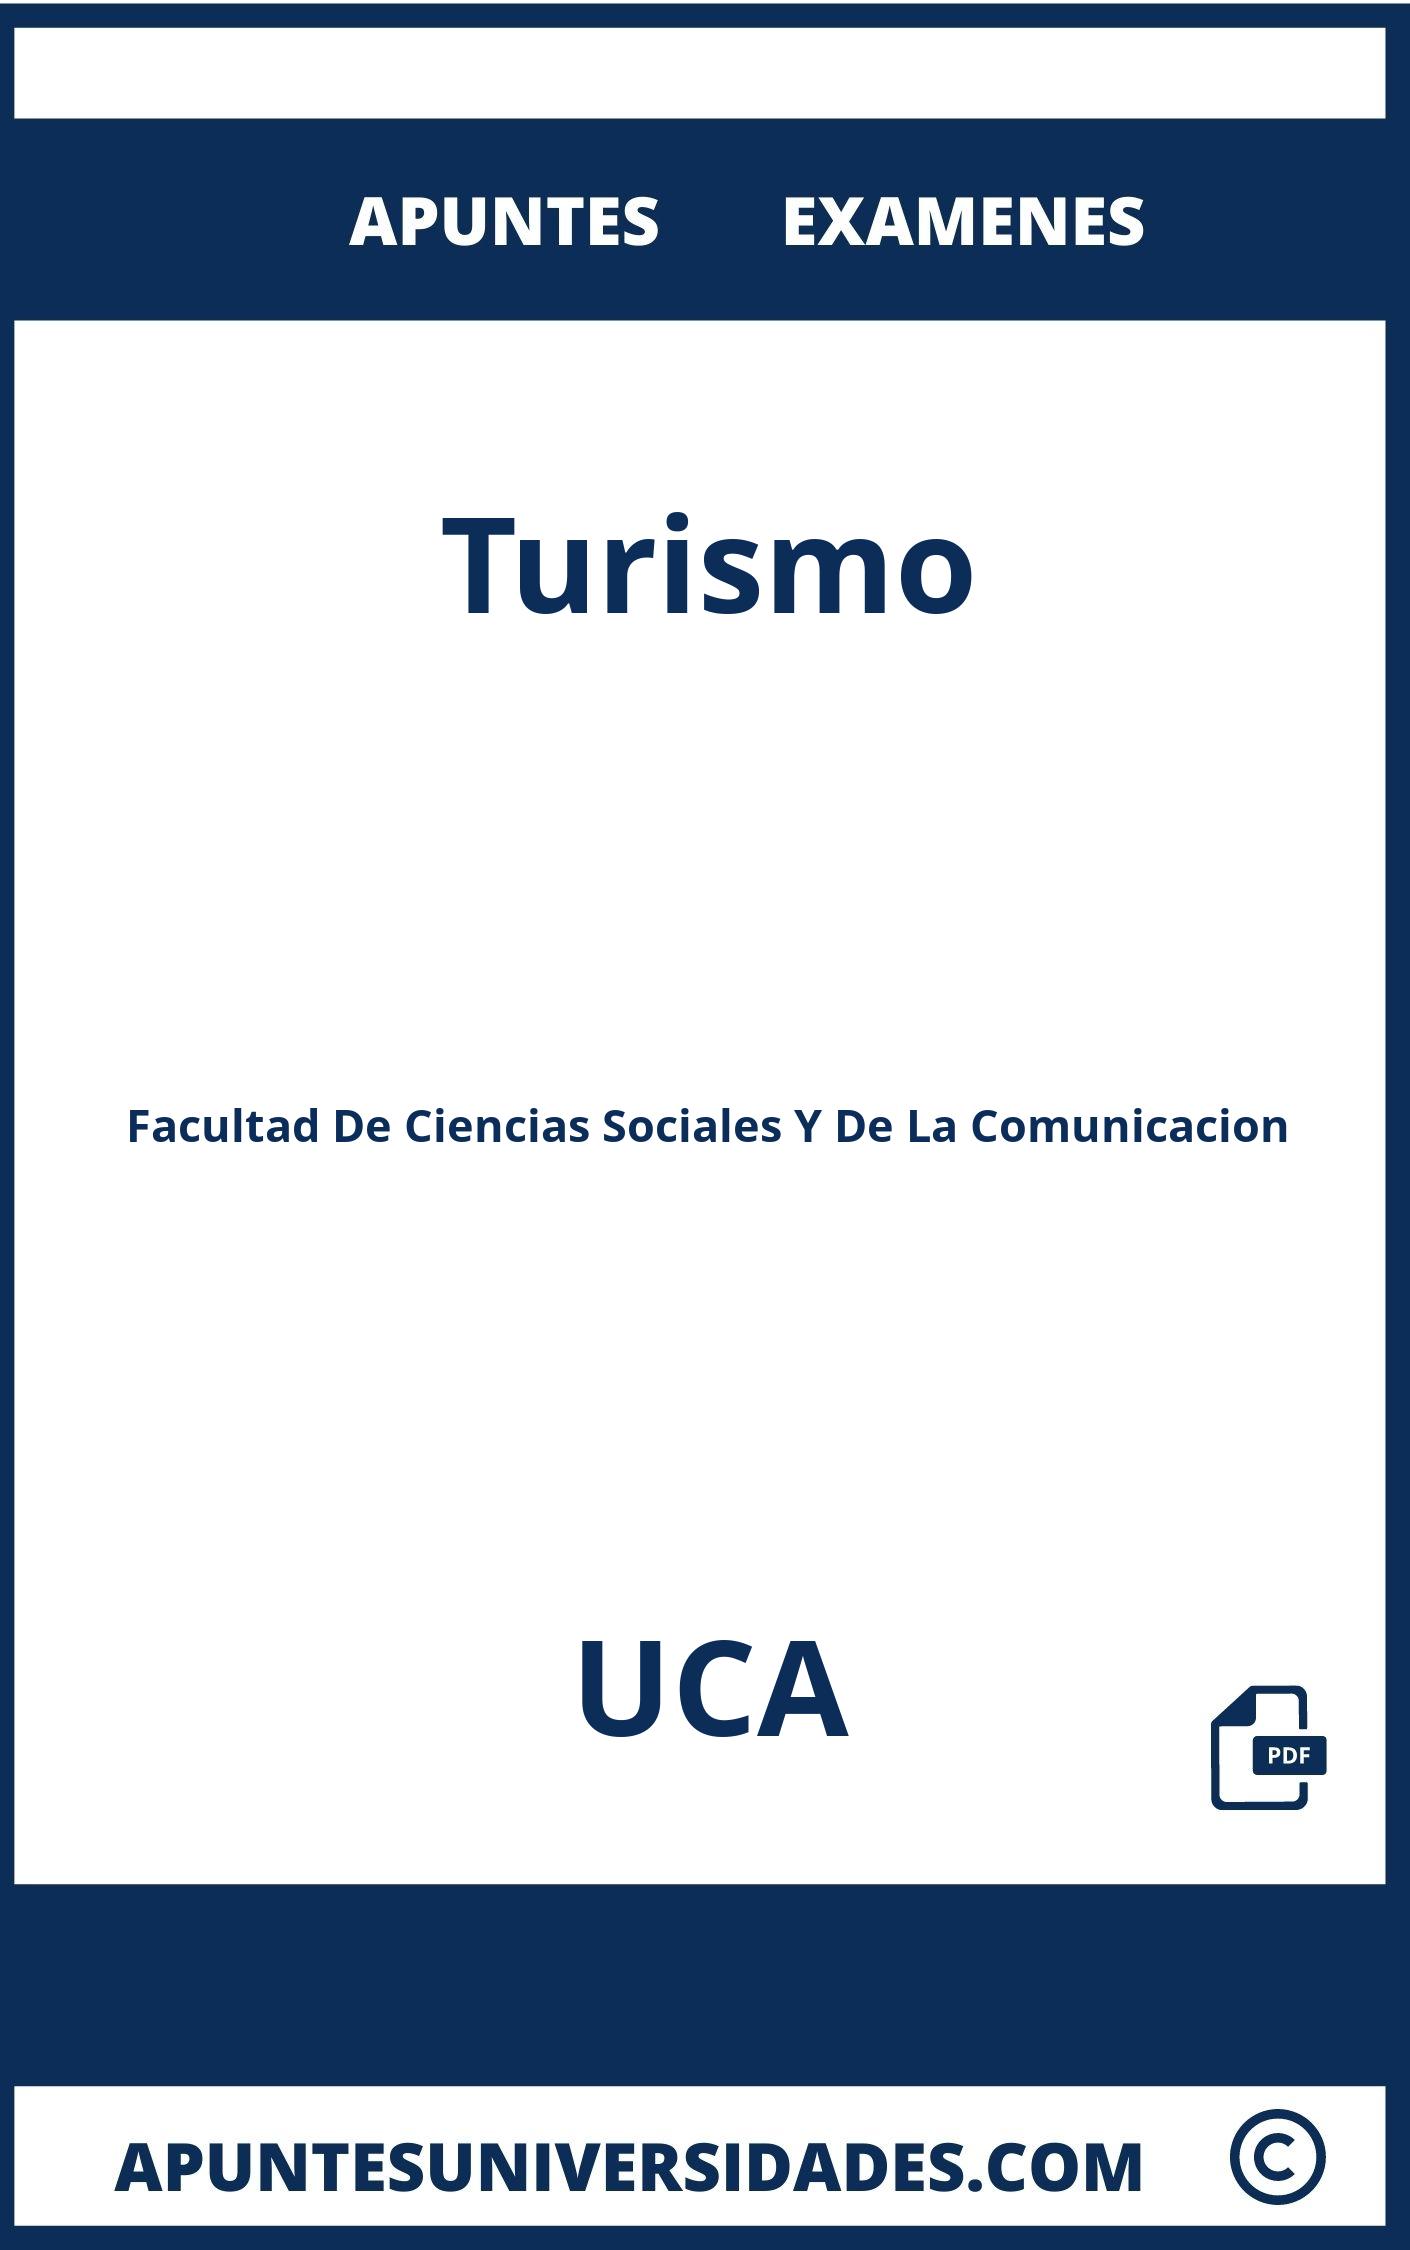 Examenes Turismo UCA y Apuntes